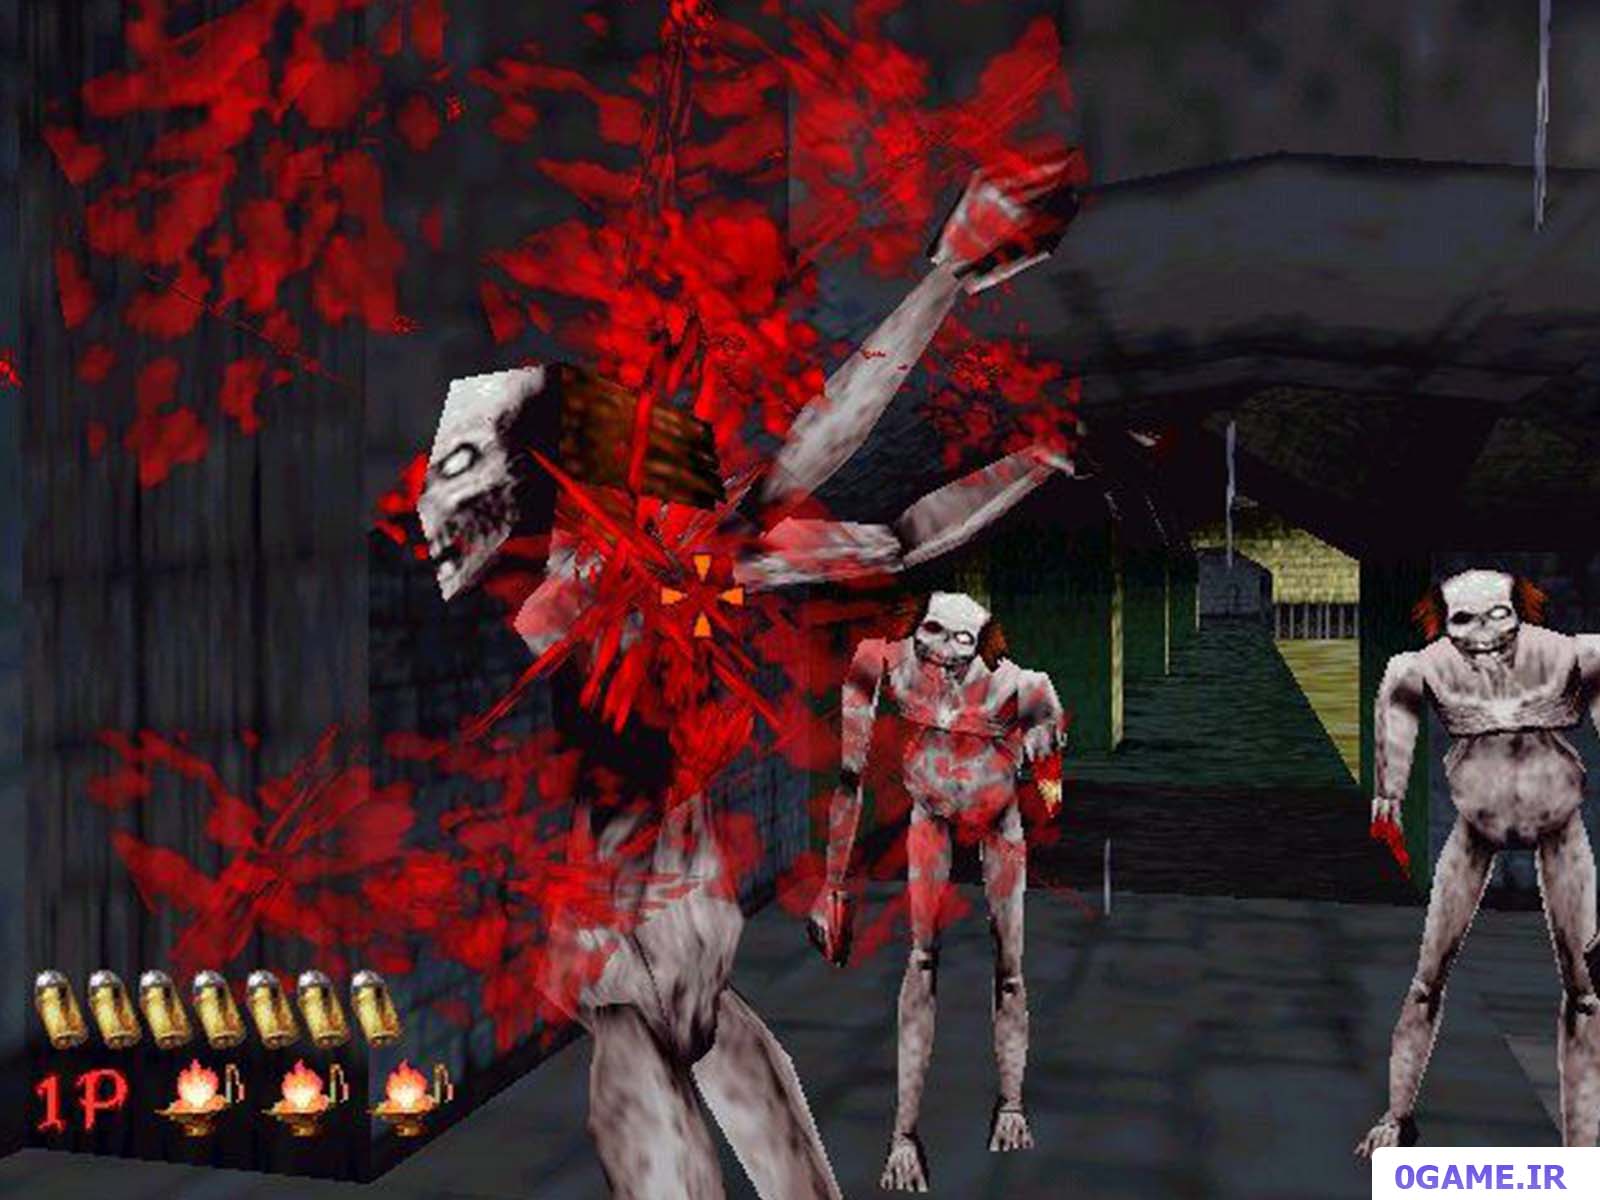 دانلود بازی خانه مردگان 1 (The House of the Dead) نسخه کامل برای کامپیوتر